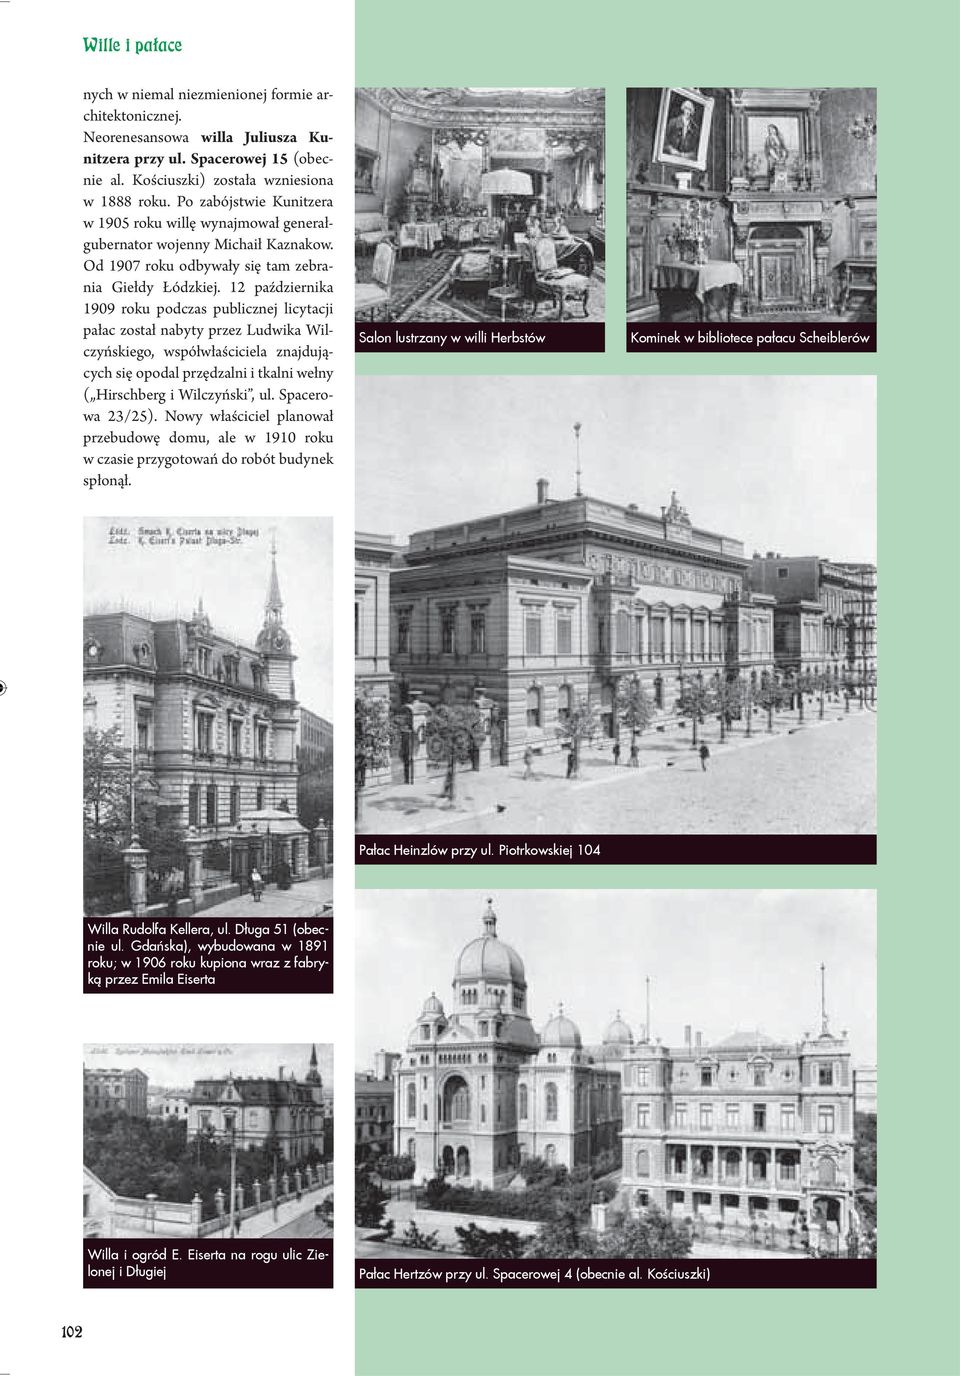 12 października 1909 roku podczas publicznej licytacji pałac został nabyty przez Ludwika Wilczyńskiego, współwłaściciela znajdujących się opodal przędzalni i tkalni wełny ( Hirschberg i Wilczyński,